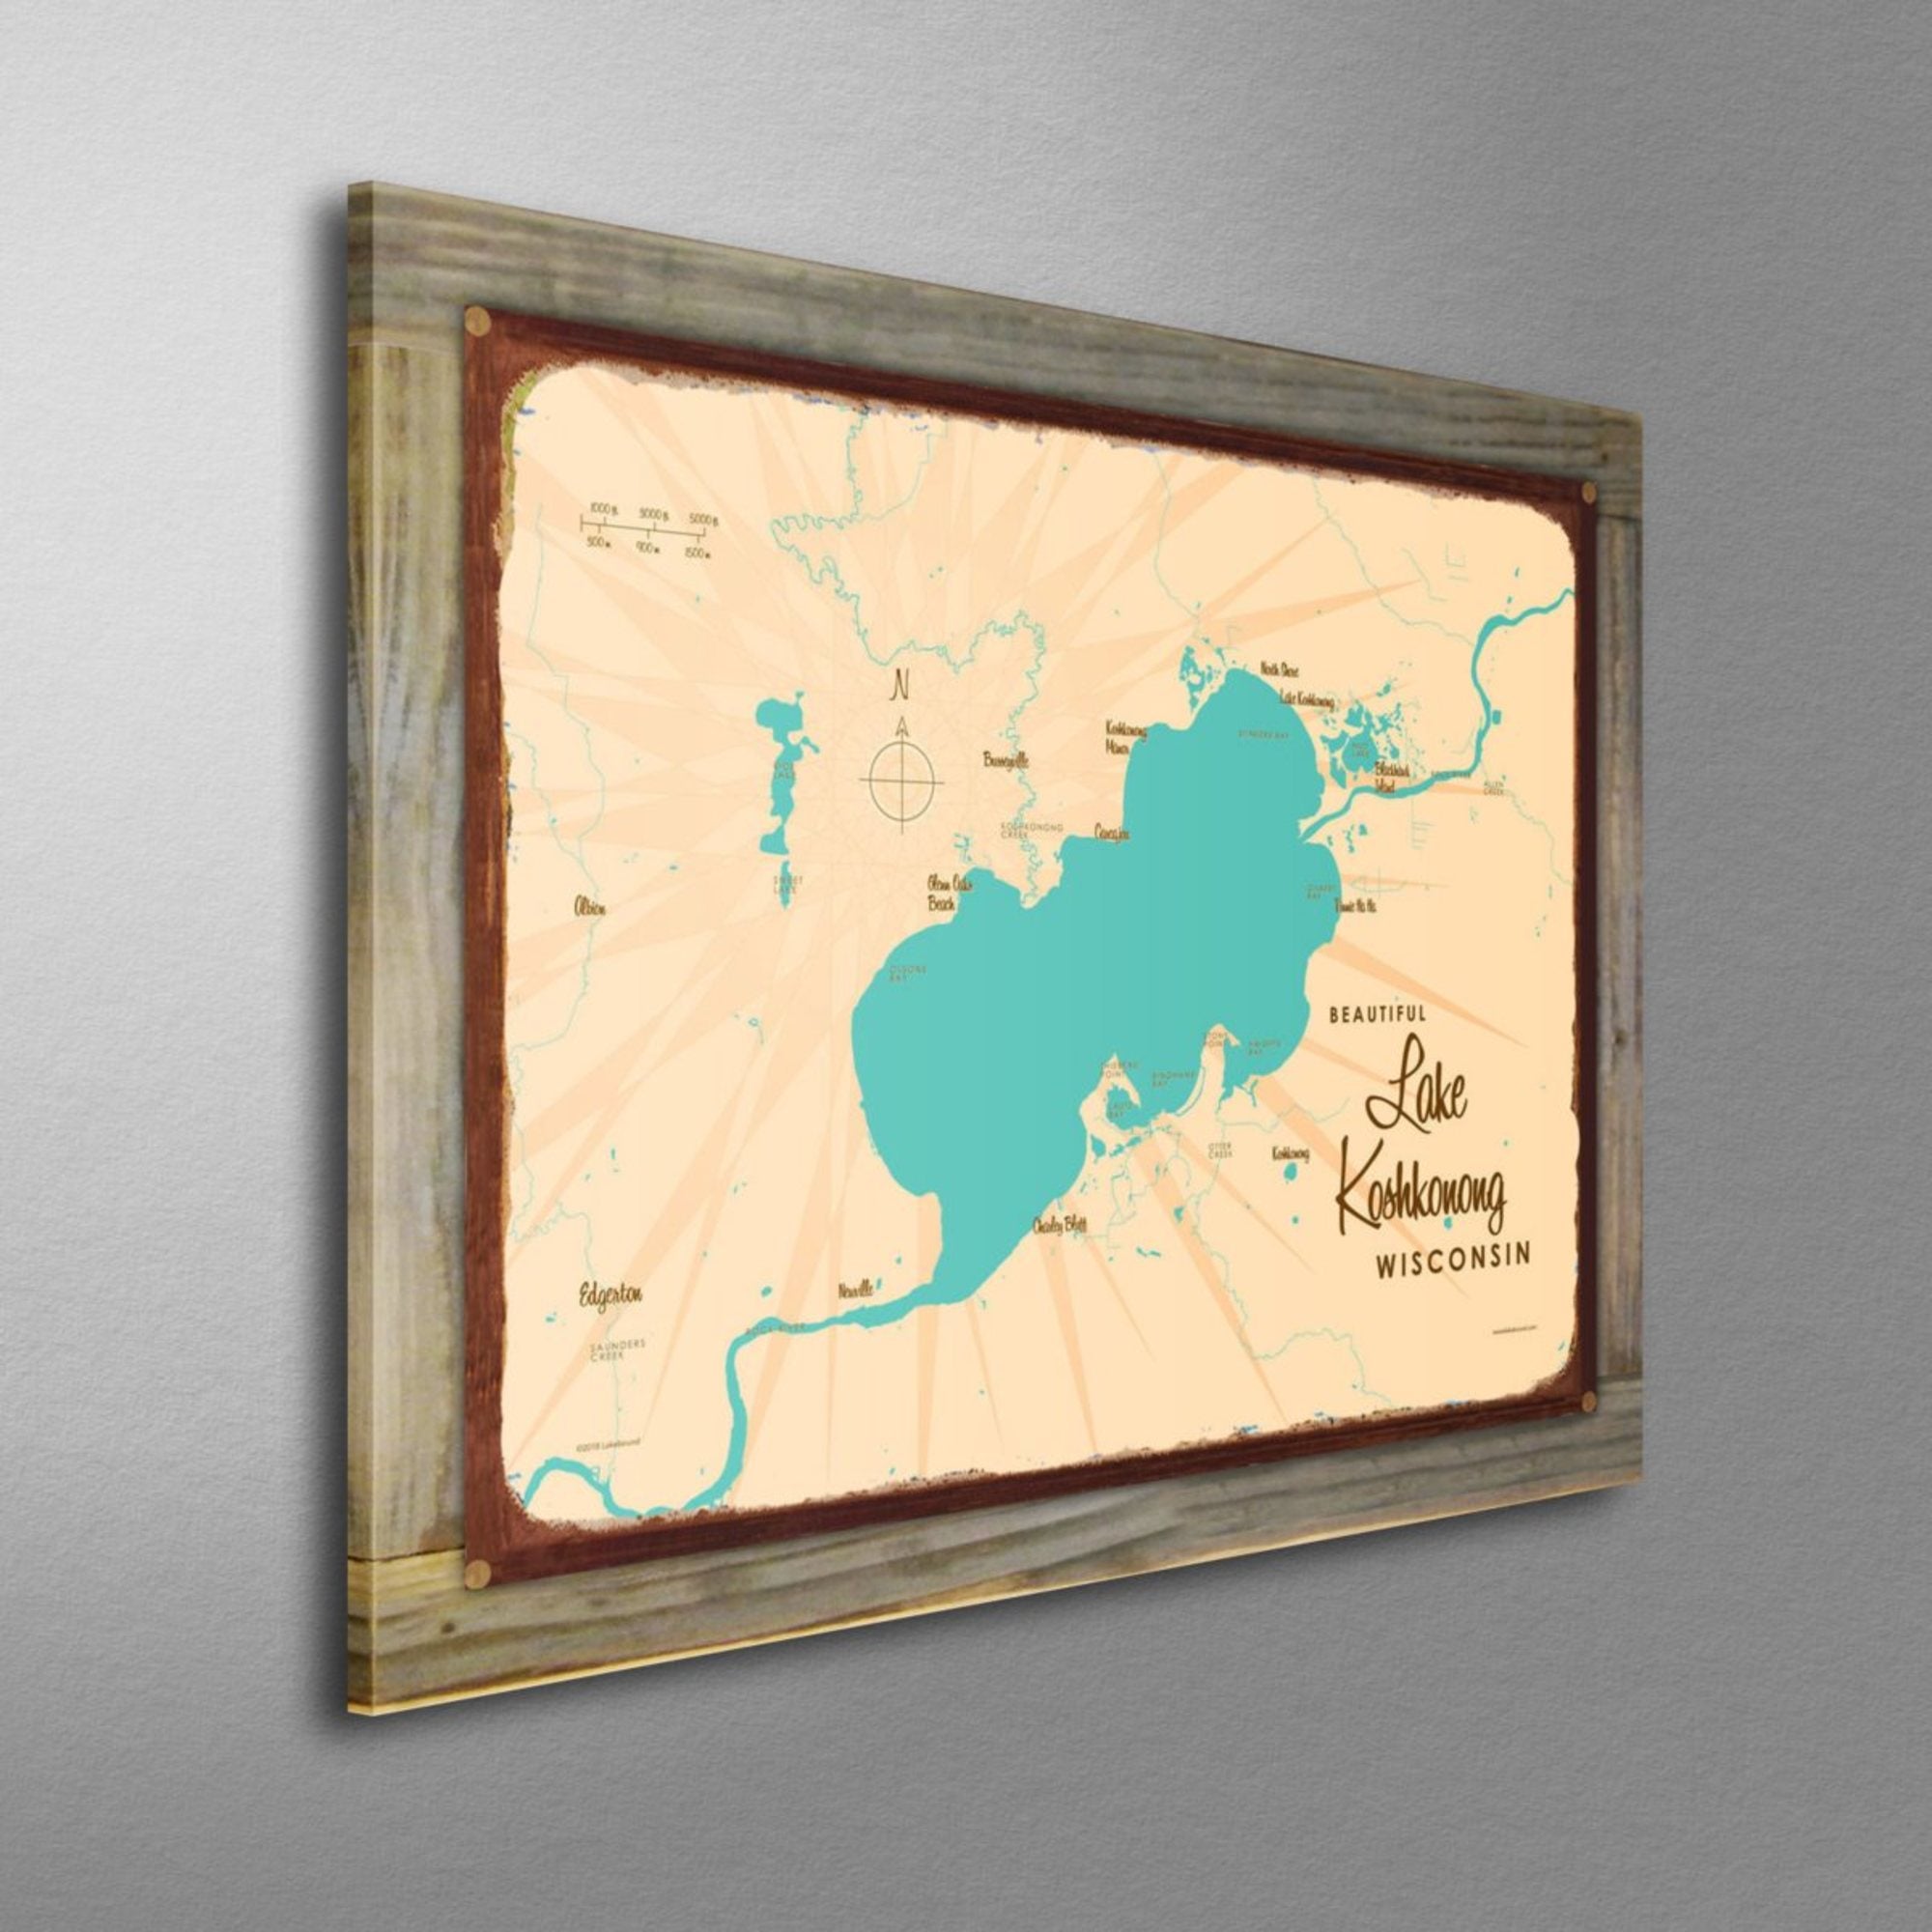 Lake Koshkonong Wisconsin, Wood-Mounted Rustic Metal Sign Map Art